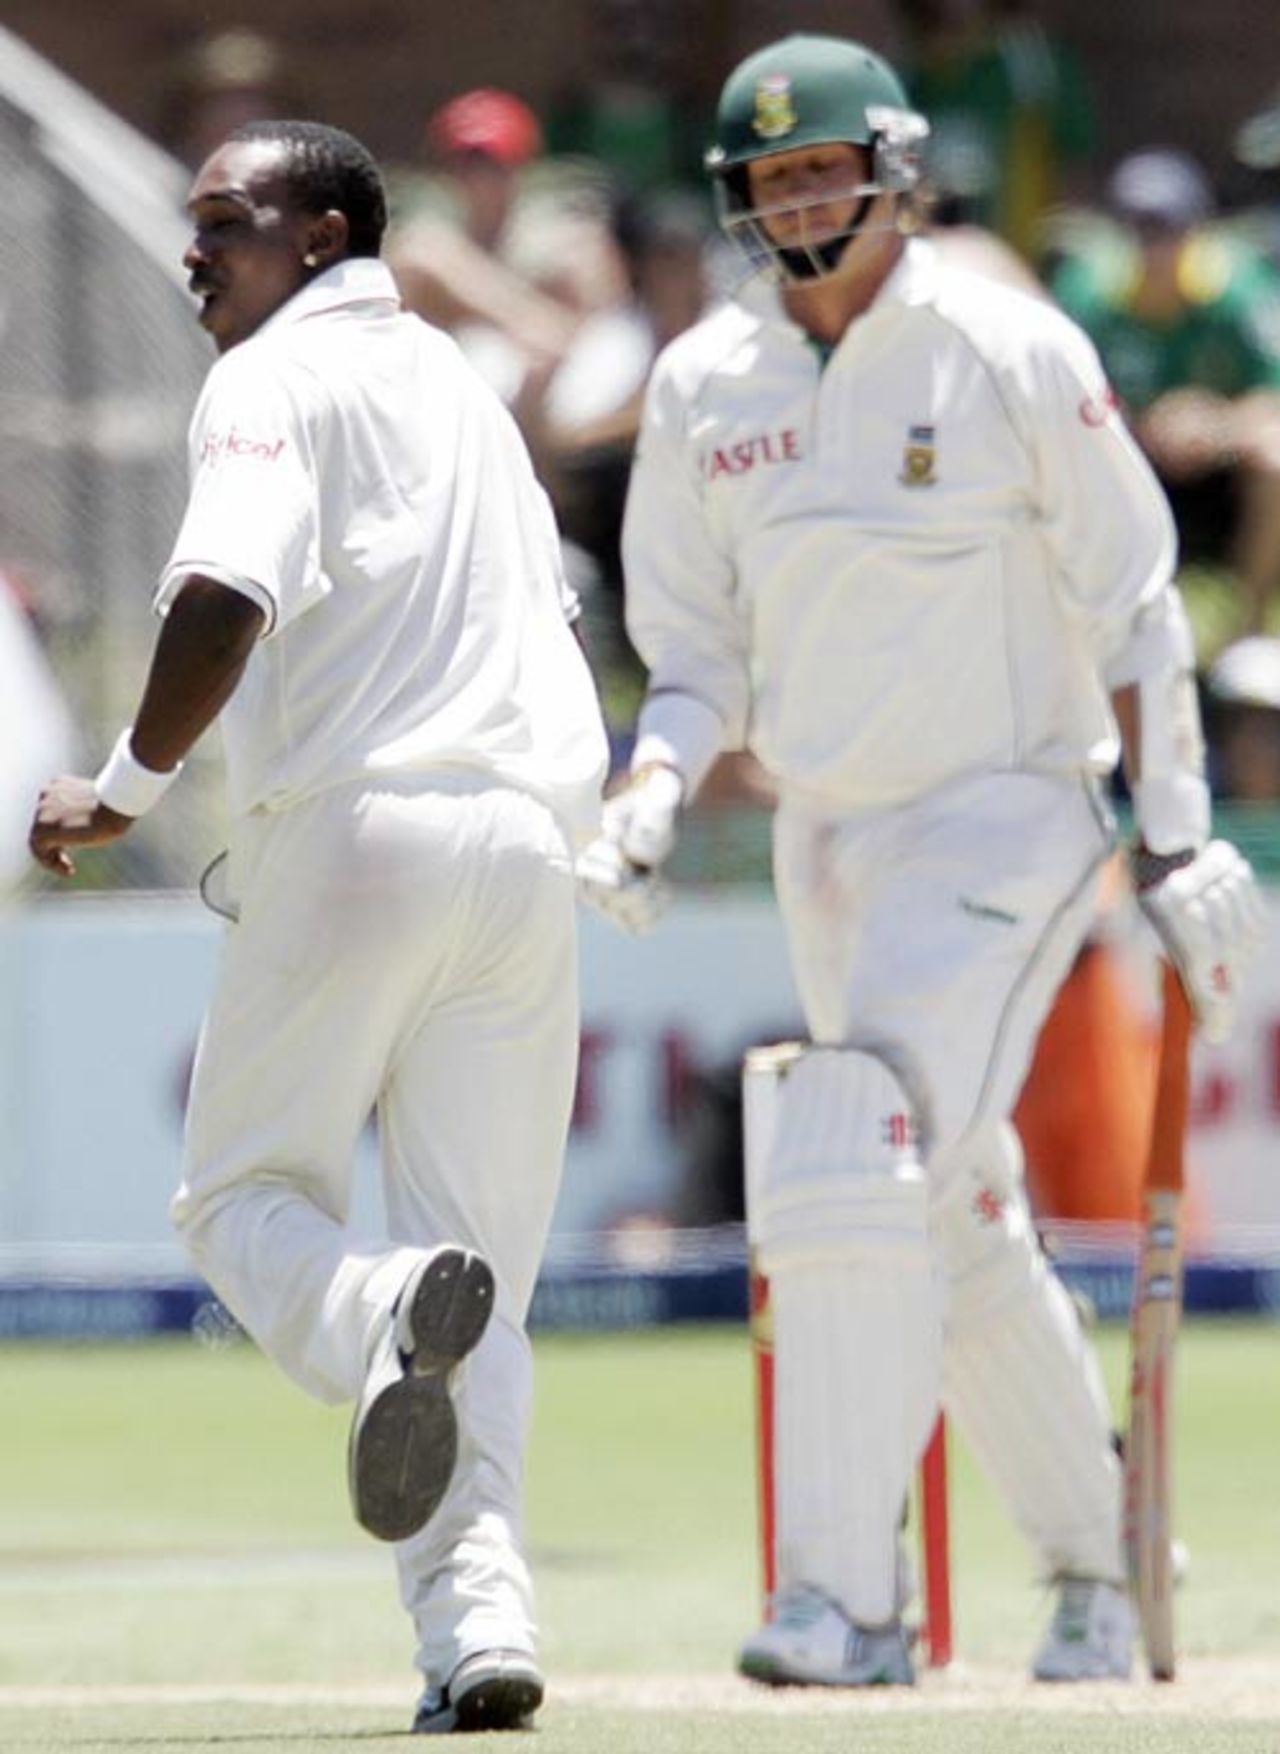 Paul Harris falls to Dwayne Bravo, South Africa v West Indies, 1st Test, Port Elizabeth, 3rd day, December 28, 2007